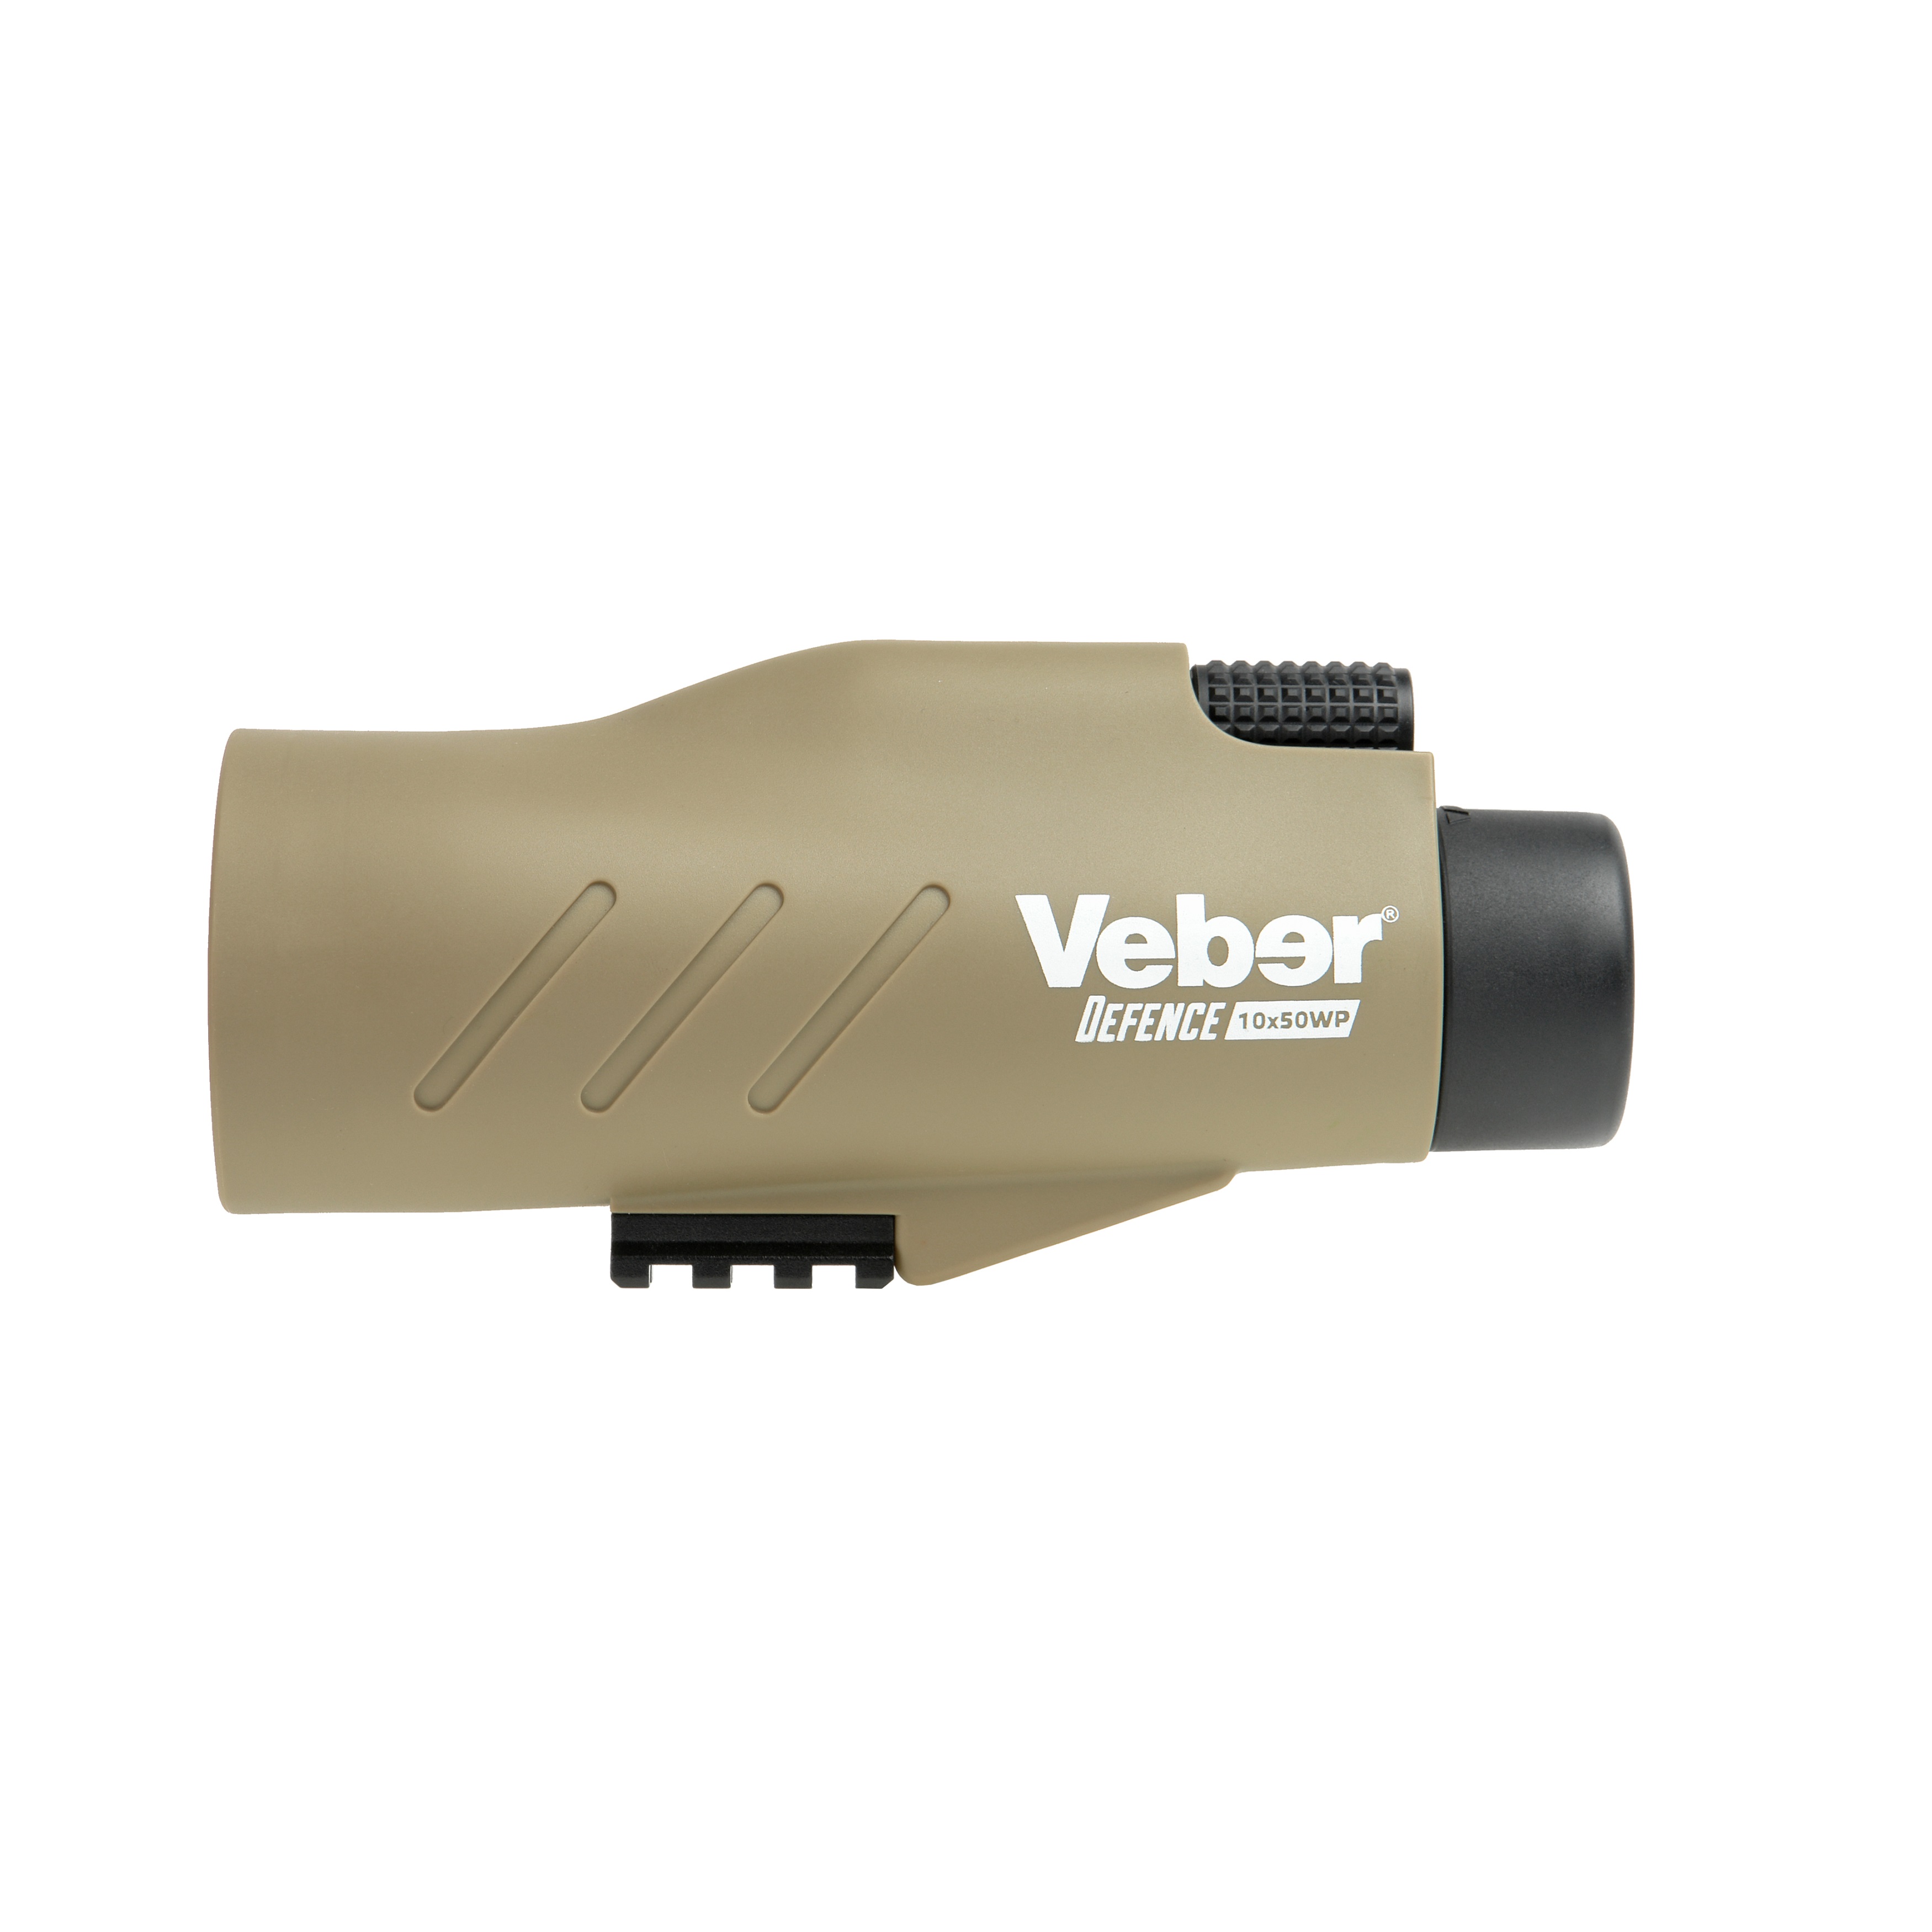   Veber Defence 1050WP     Ultra-mart